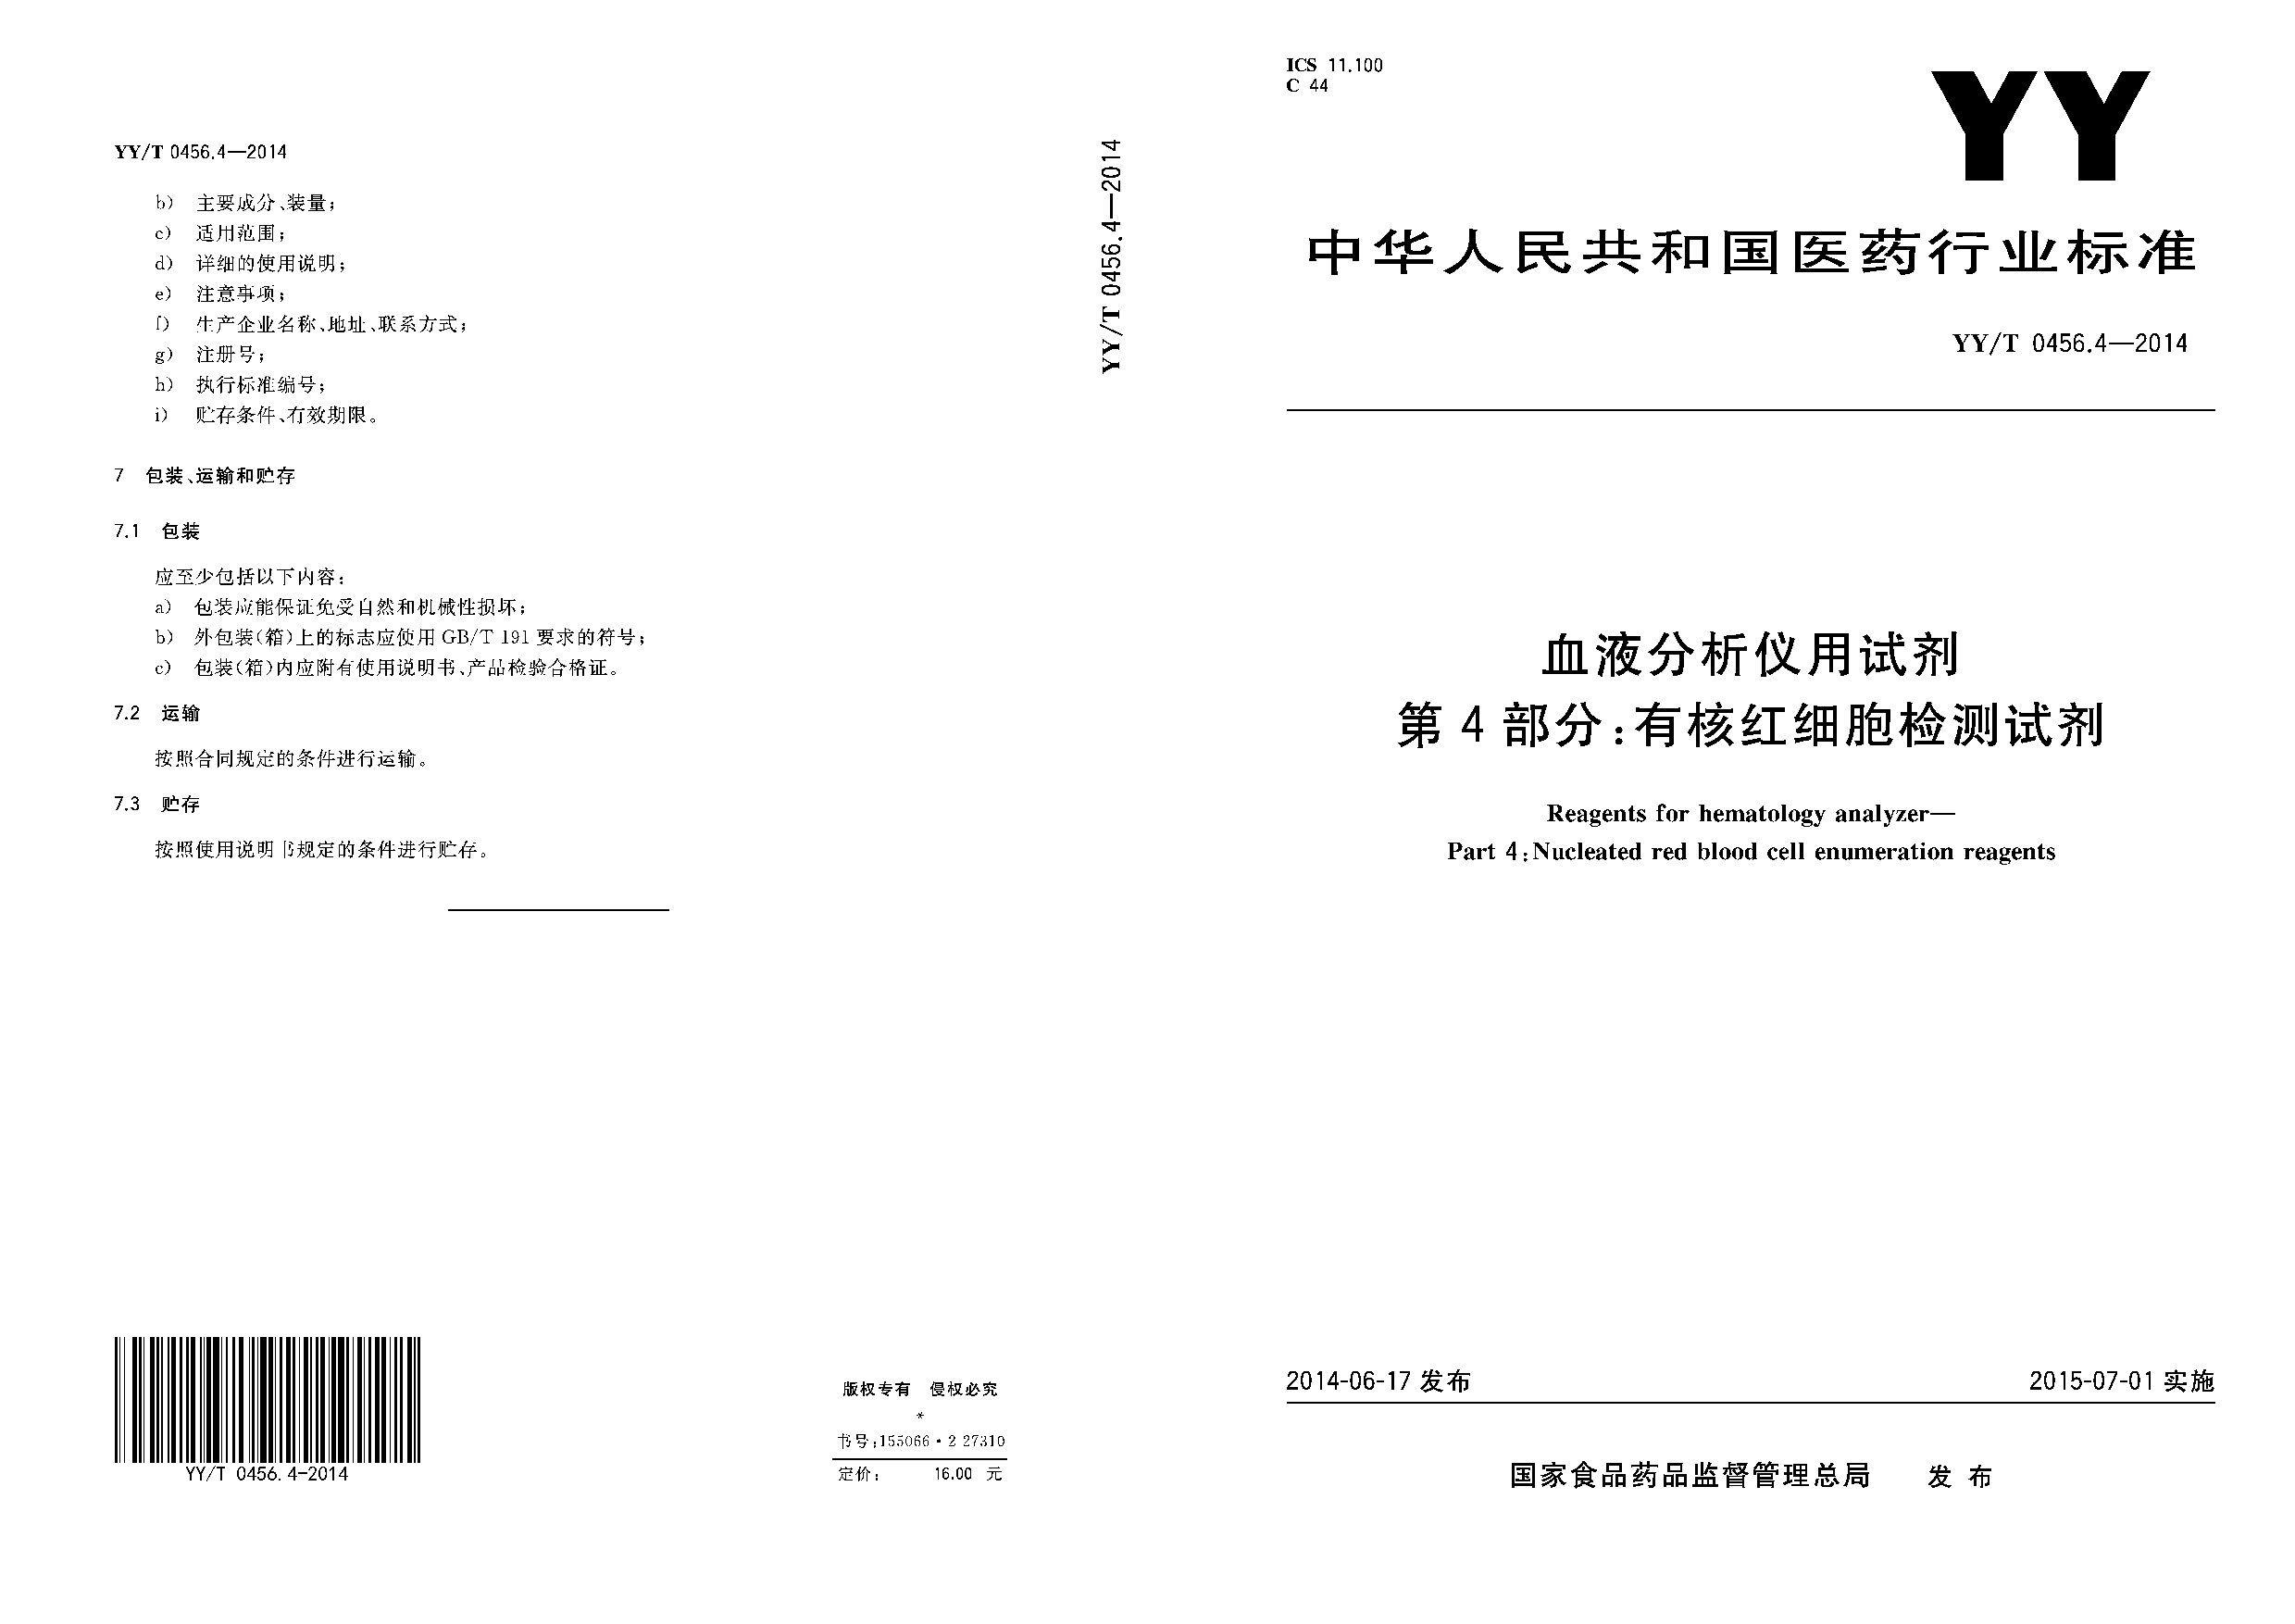 YY/T 0456.4-2014封面图